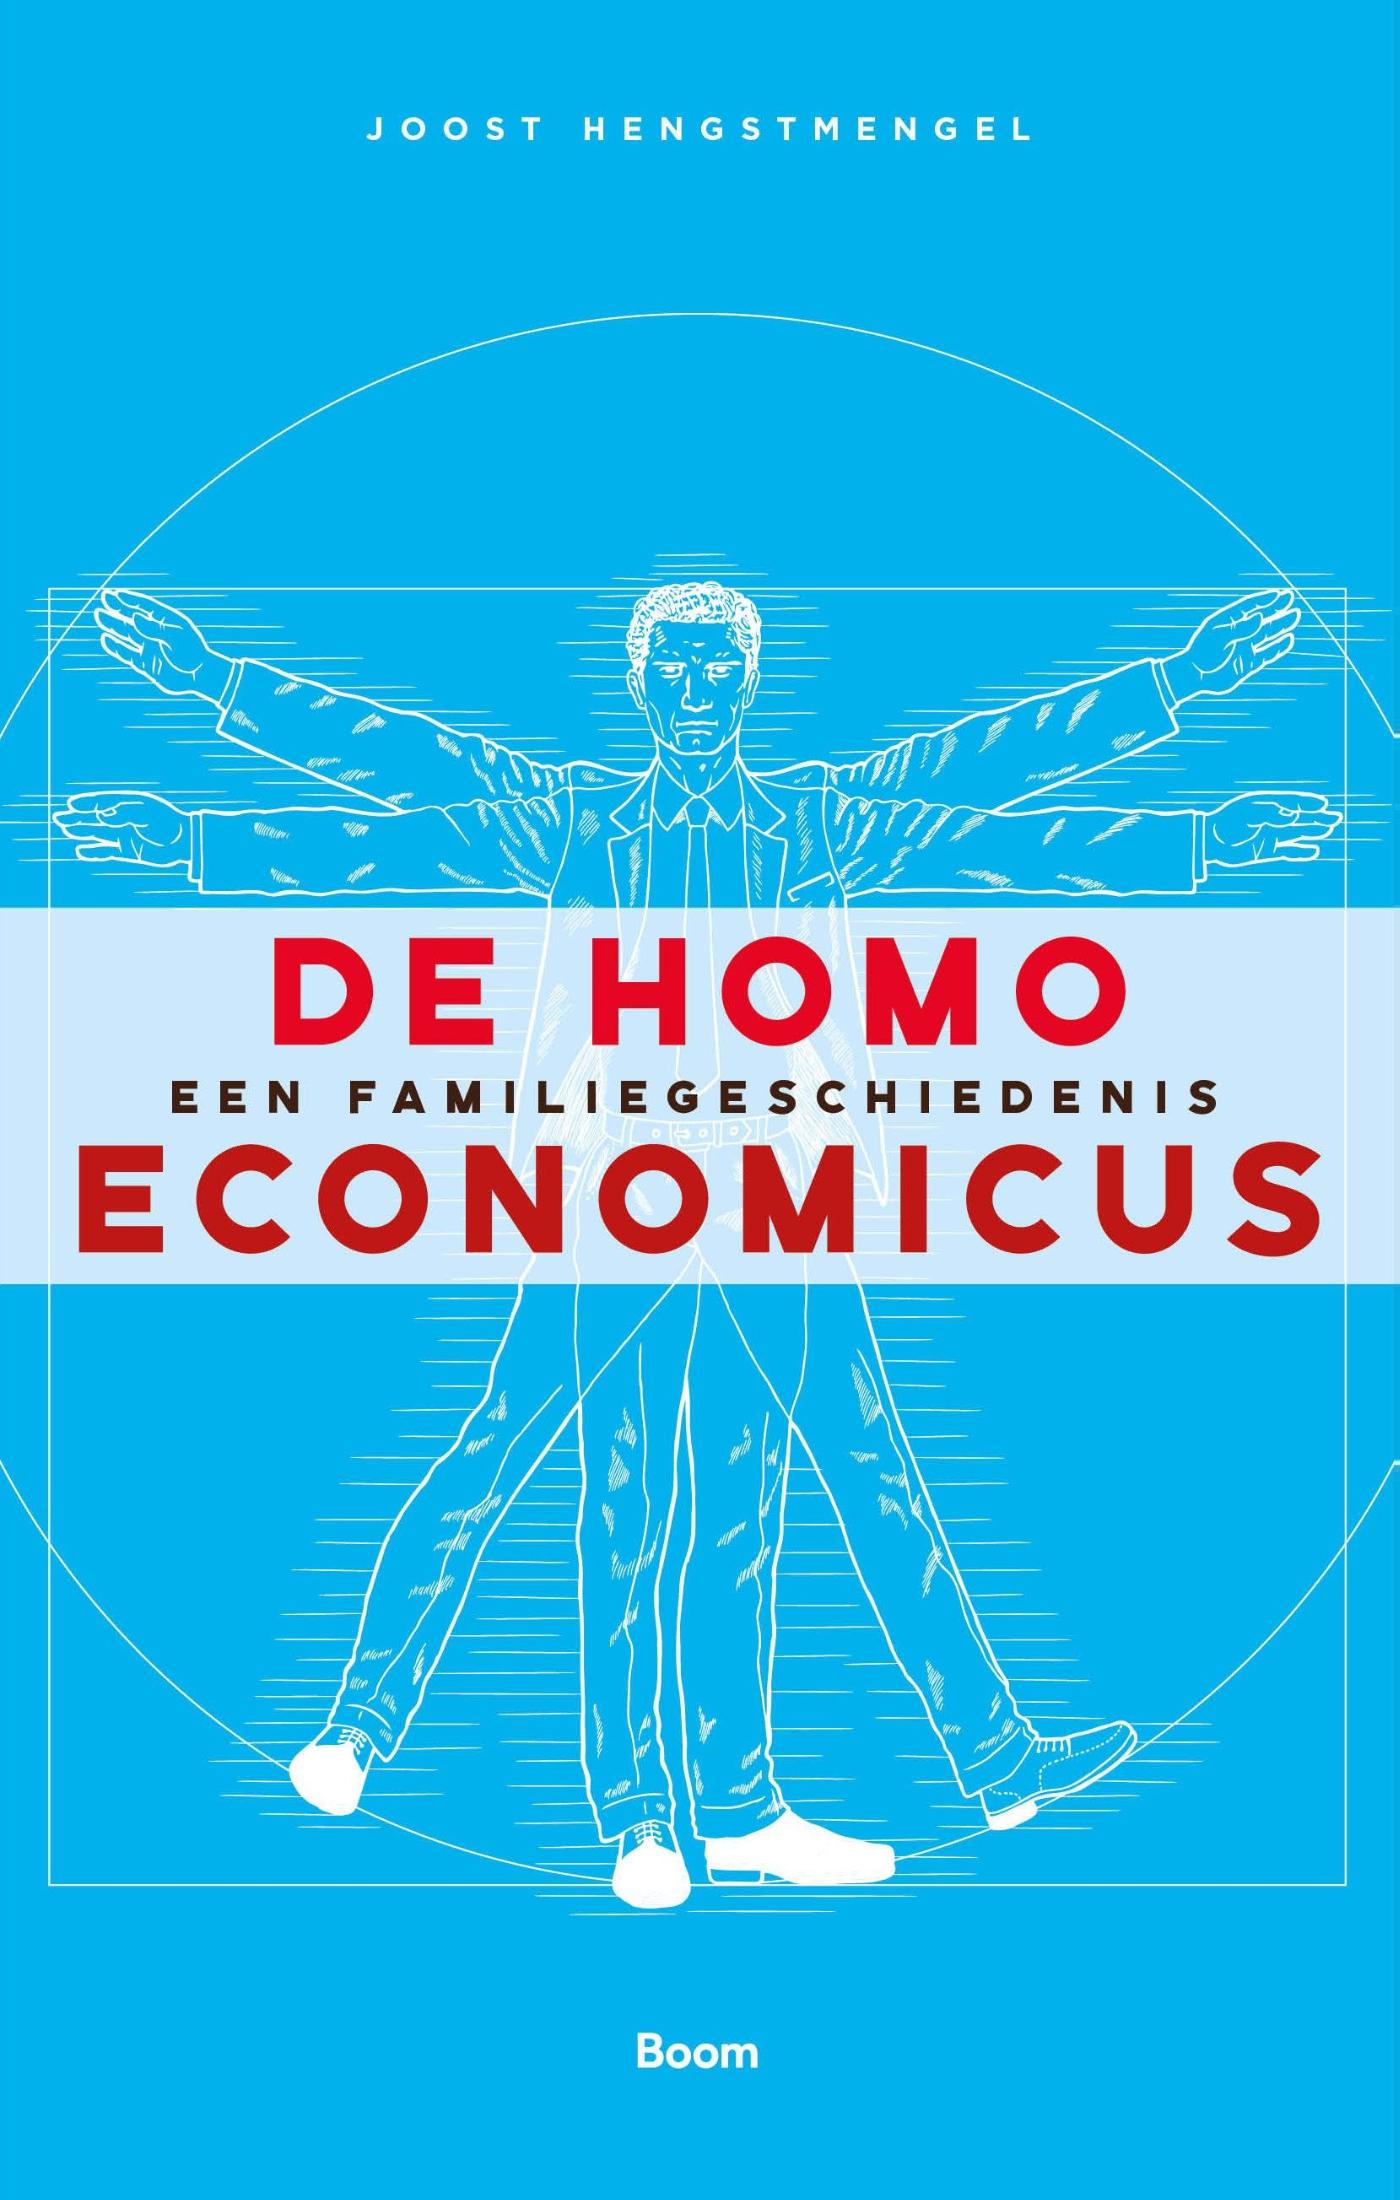 De homo economicus